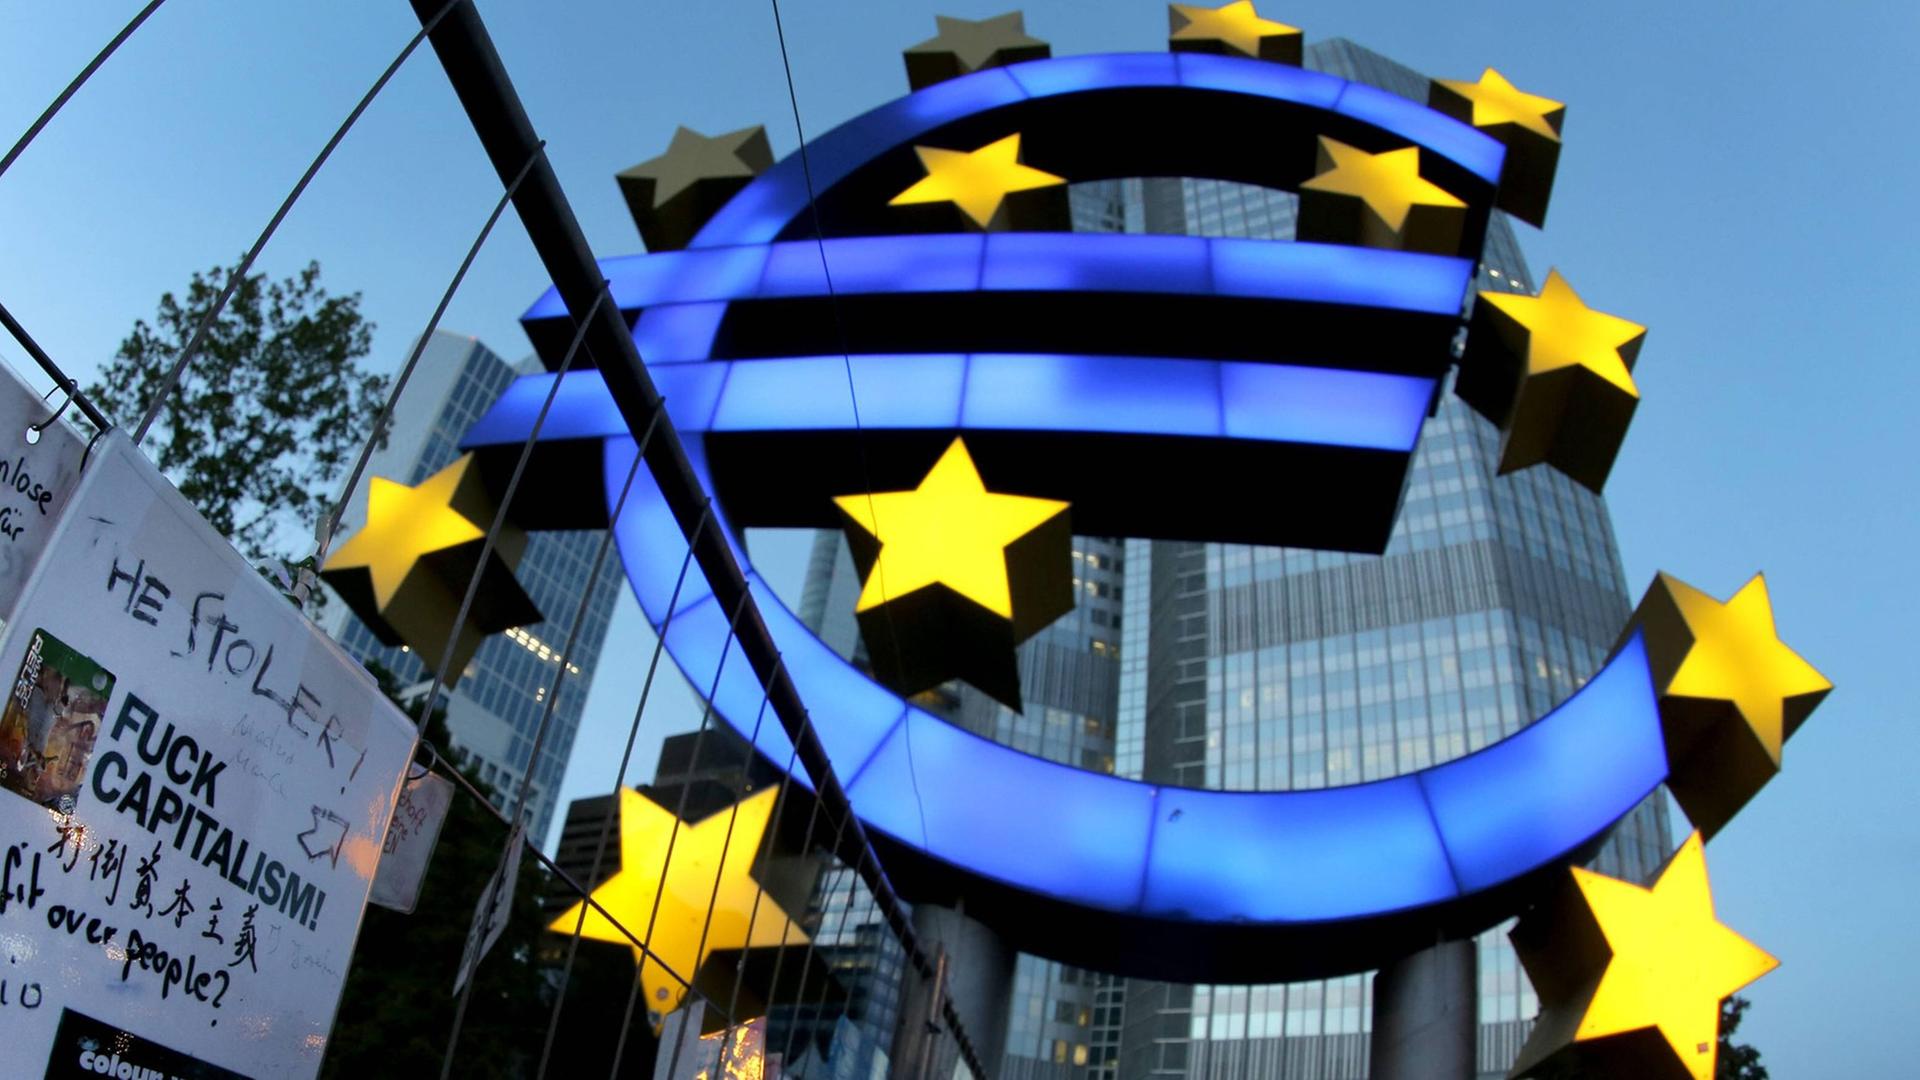 Das Eurozeichen vor der Europäischen Zentralbank (EZB) in Frankfurt/Main mit Protestplakat